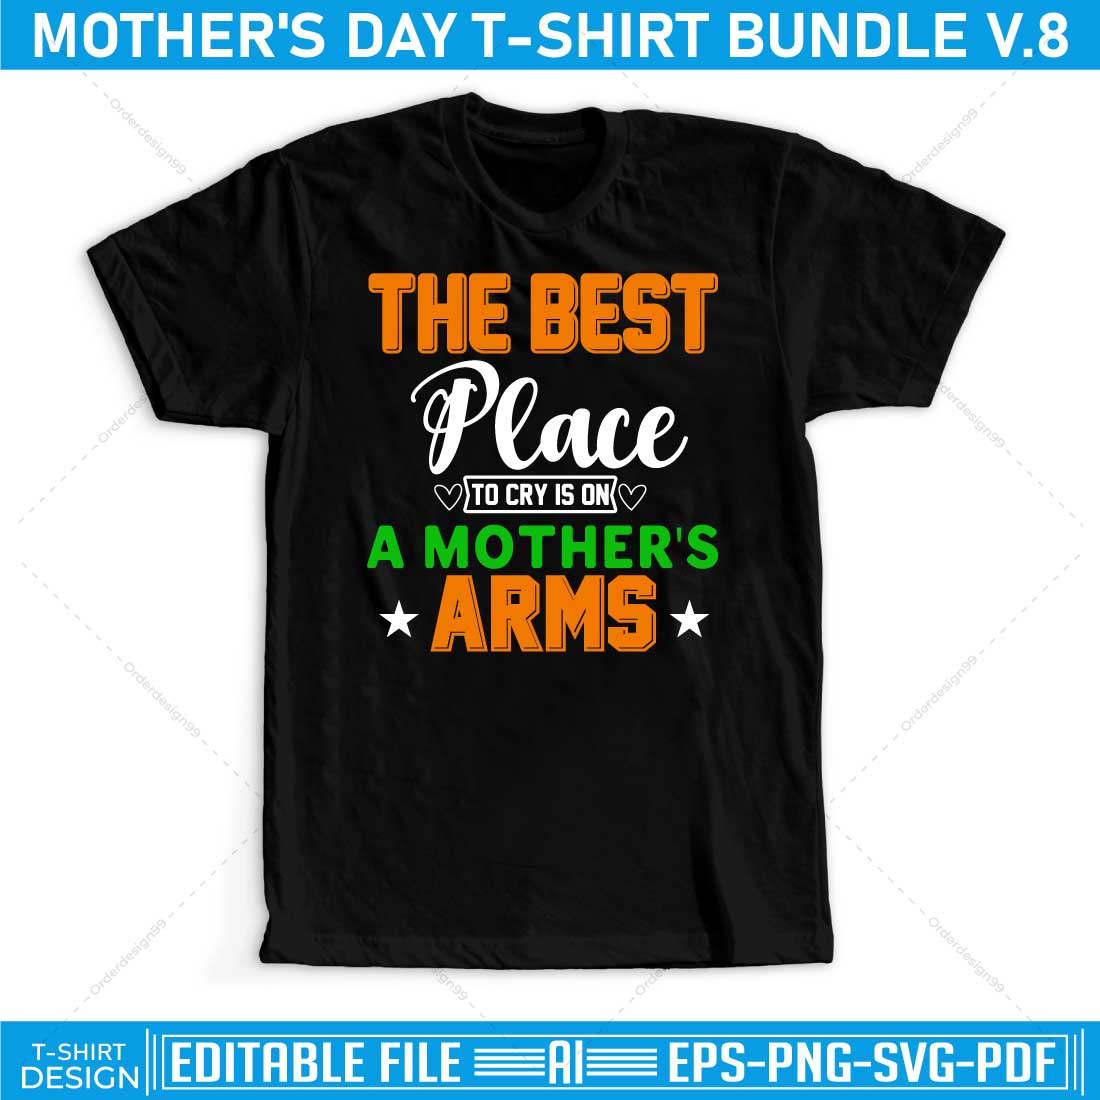 mothers day t shirt bundle v.8 p2 186